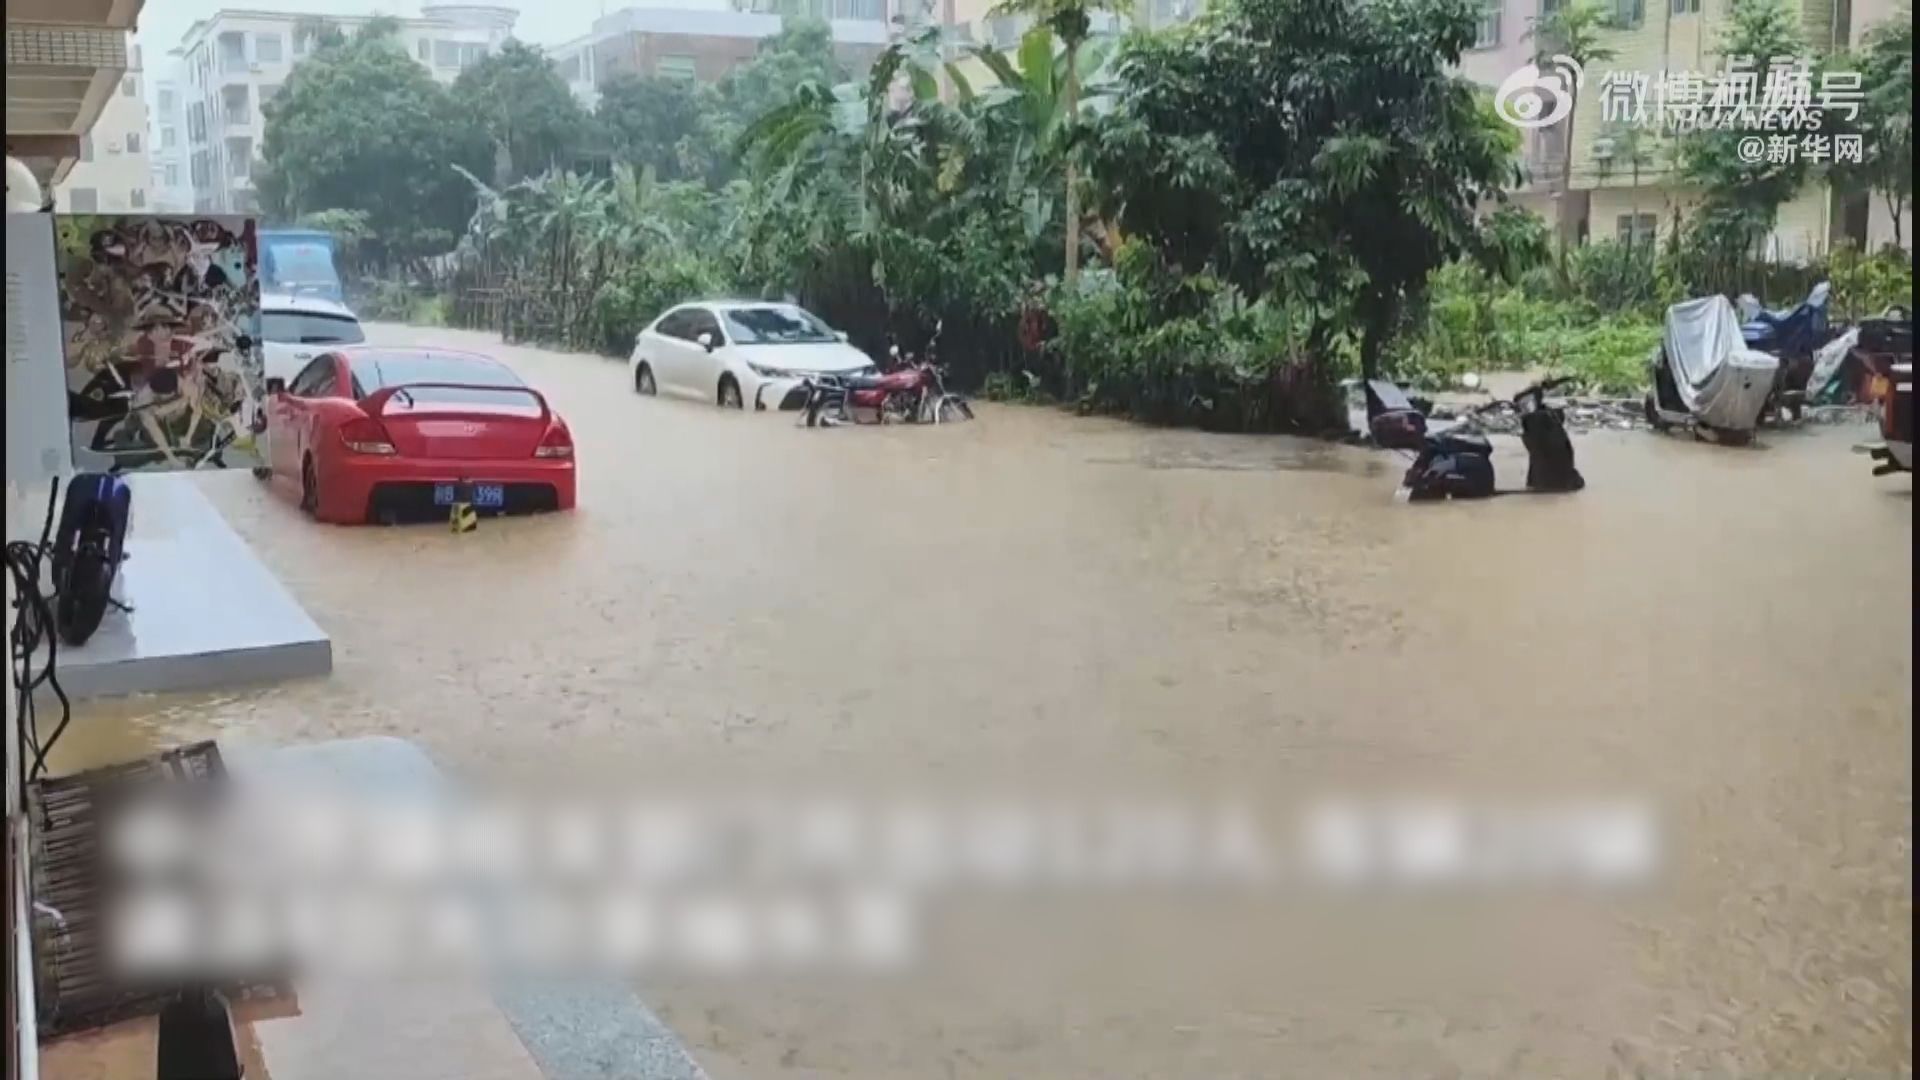 廣東中山多地暴雨洪災 消防營救轉移超過460人